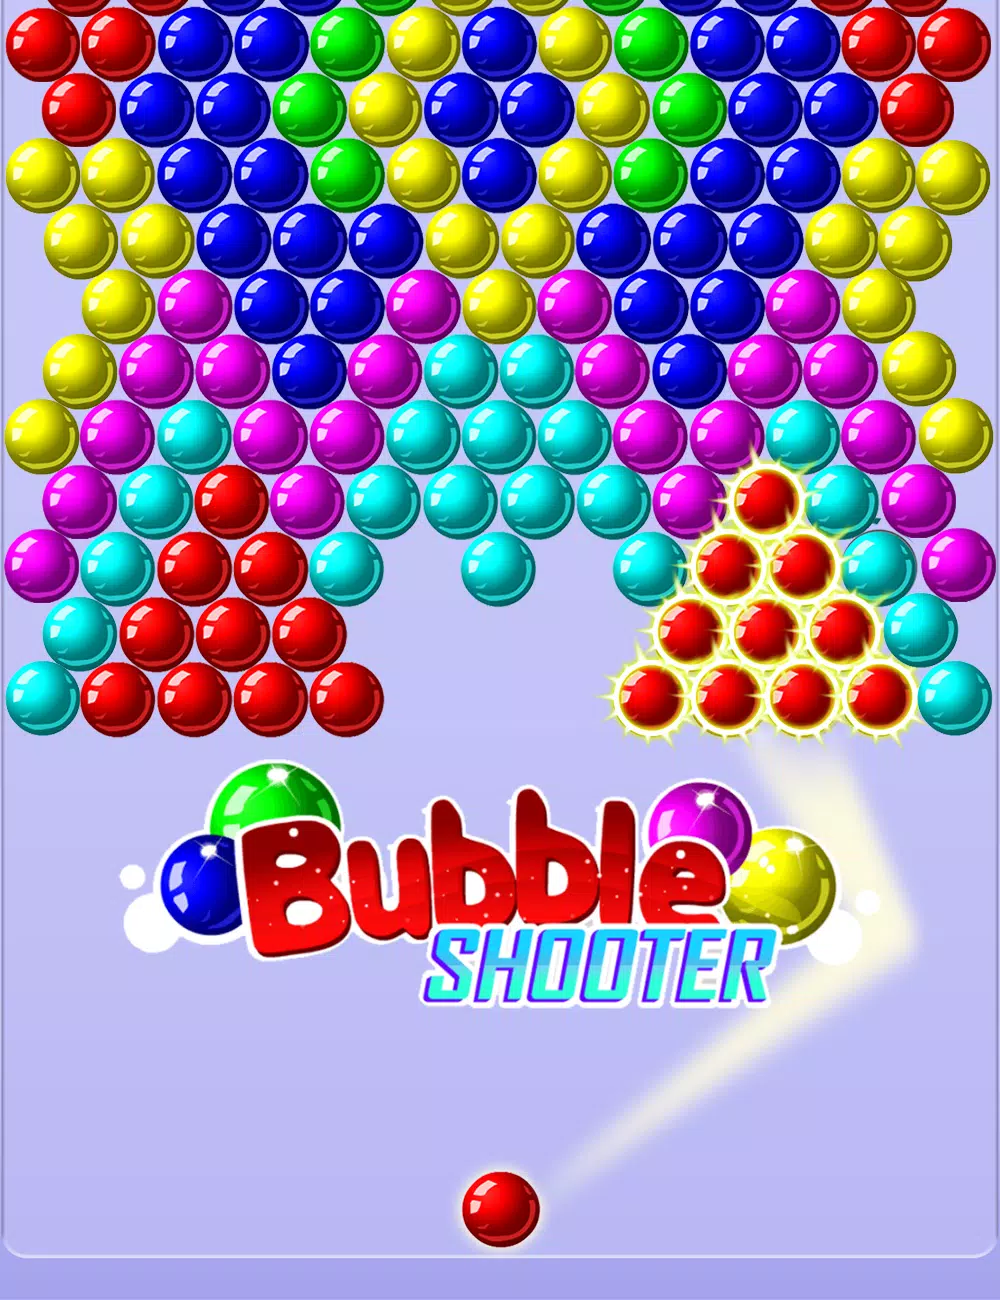 Download do APK de Jogo De Bolha - Bubble Shooter para Android